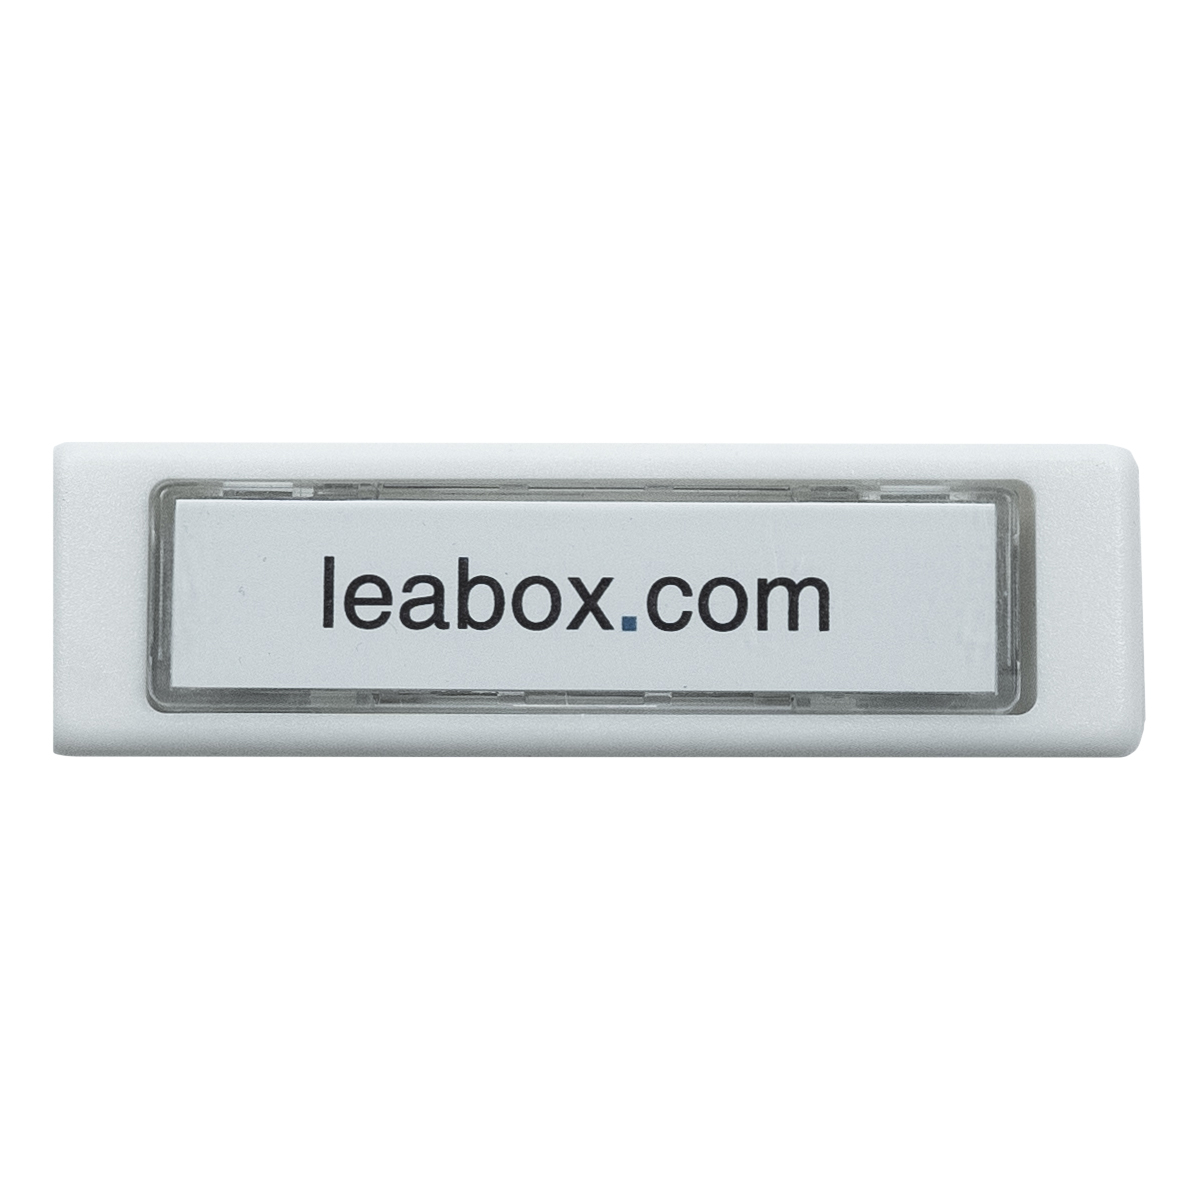 ► leabox Klingeltaster weiß  mit Namensschildeinlage